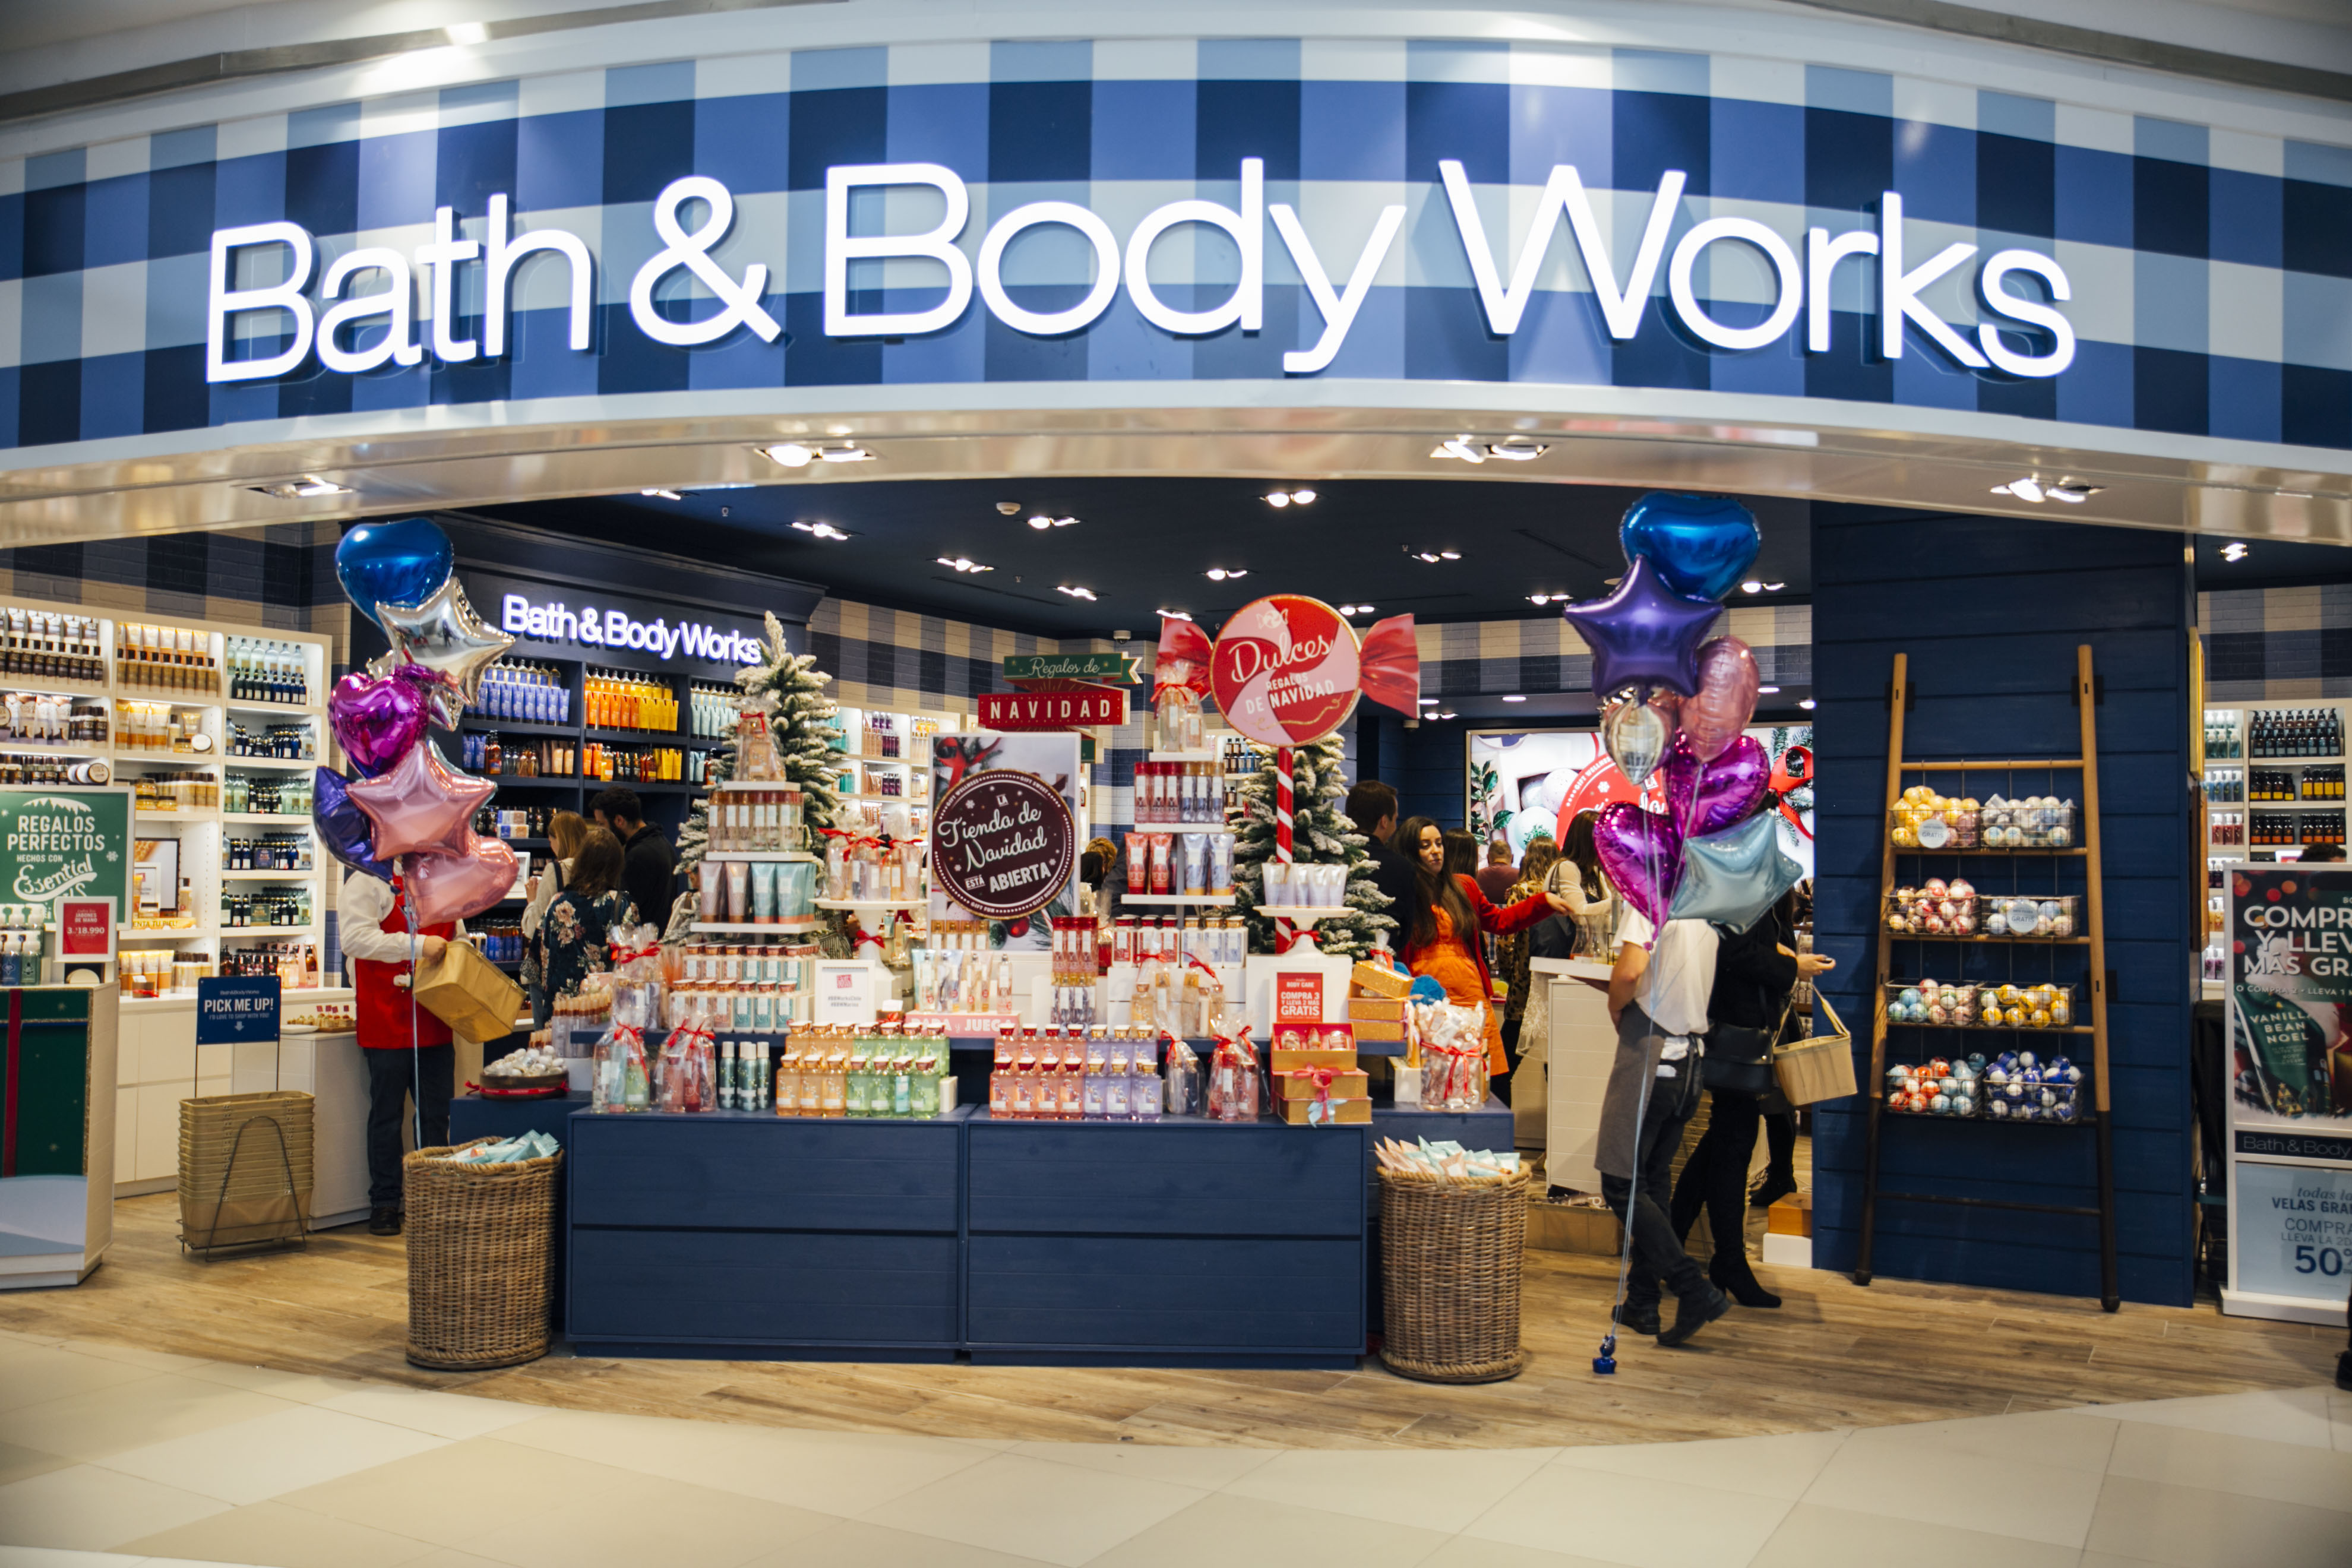  Bath & Body Works abre las puertas de su primera tienda en región   